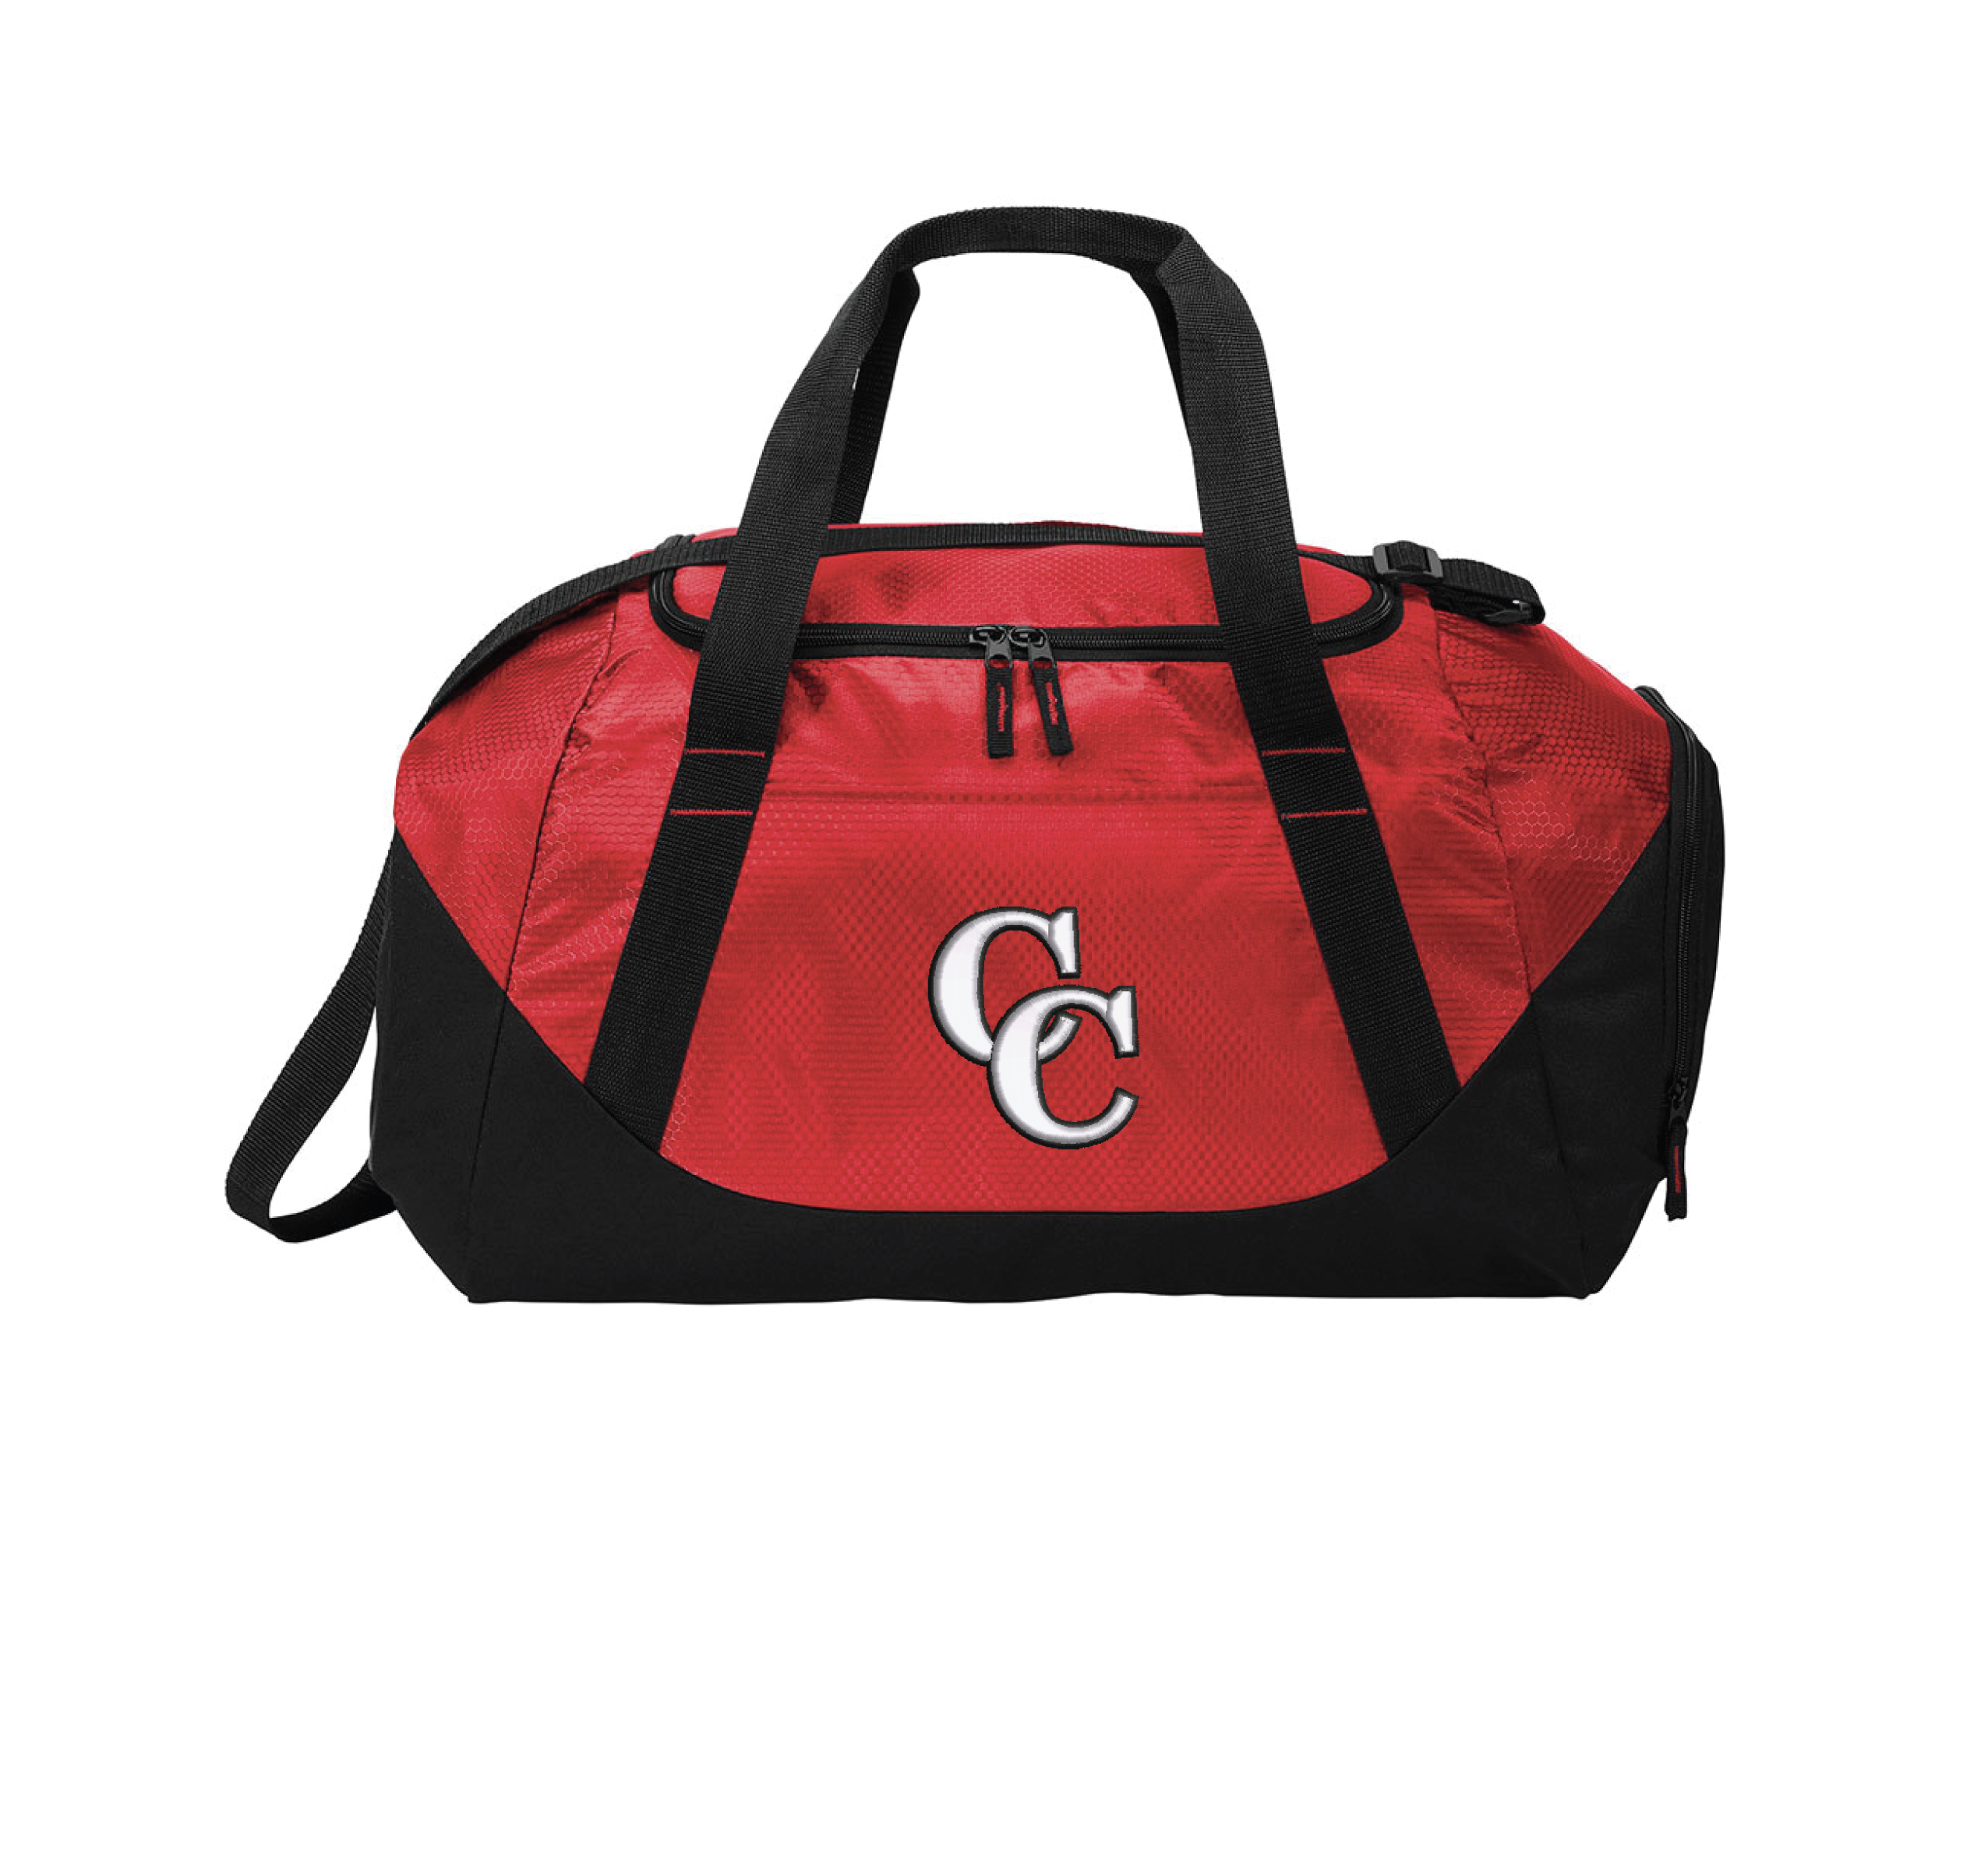 CC Duffle Bag – Redding Company